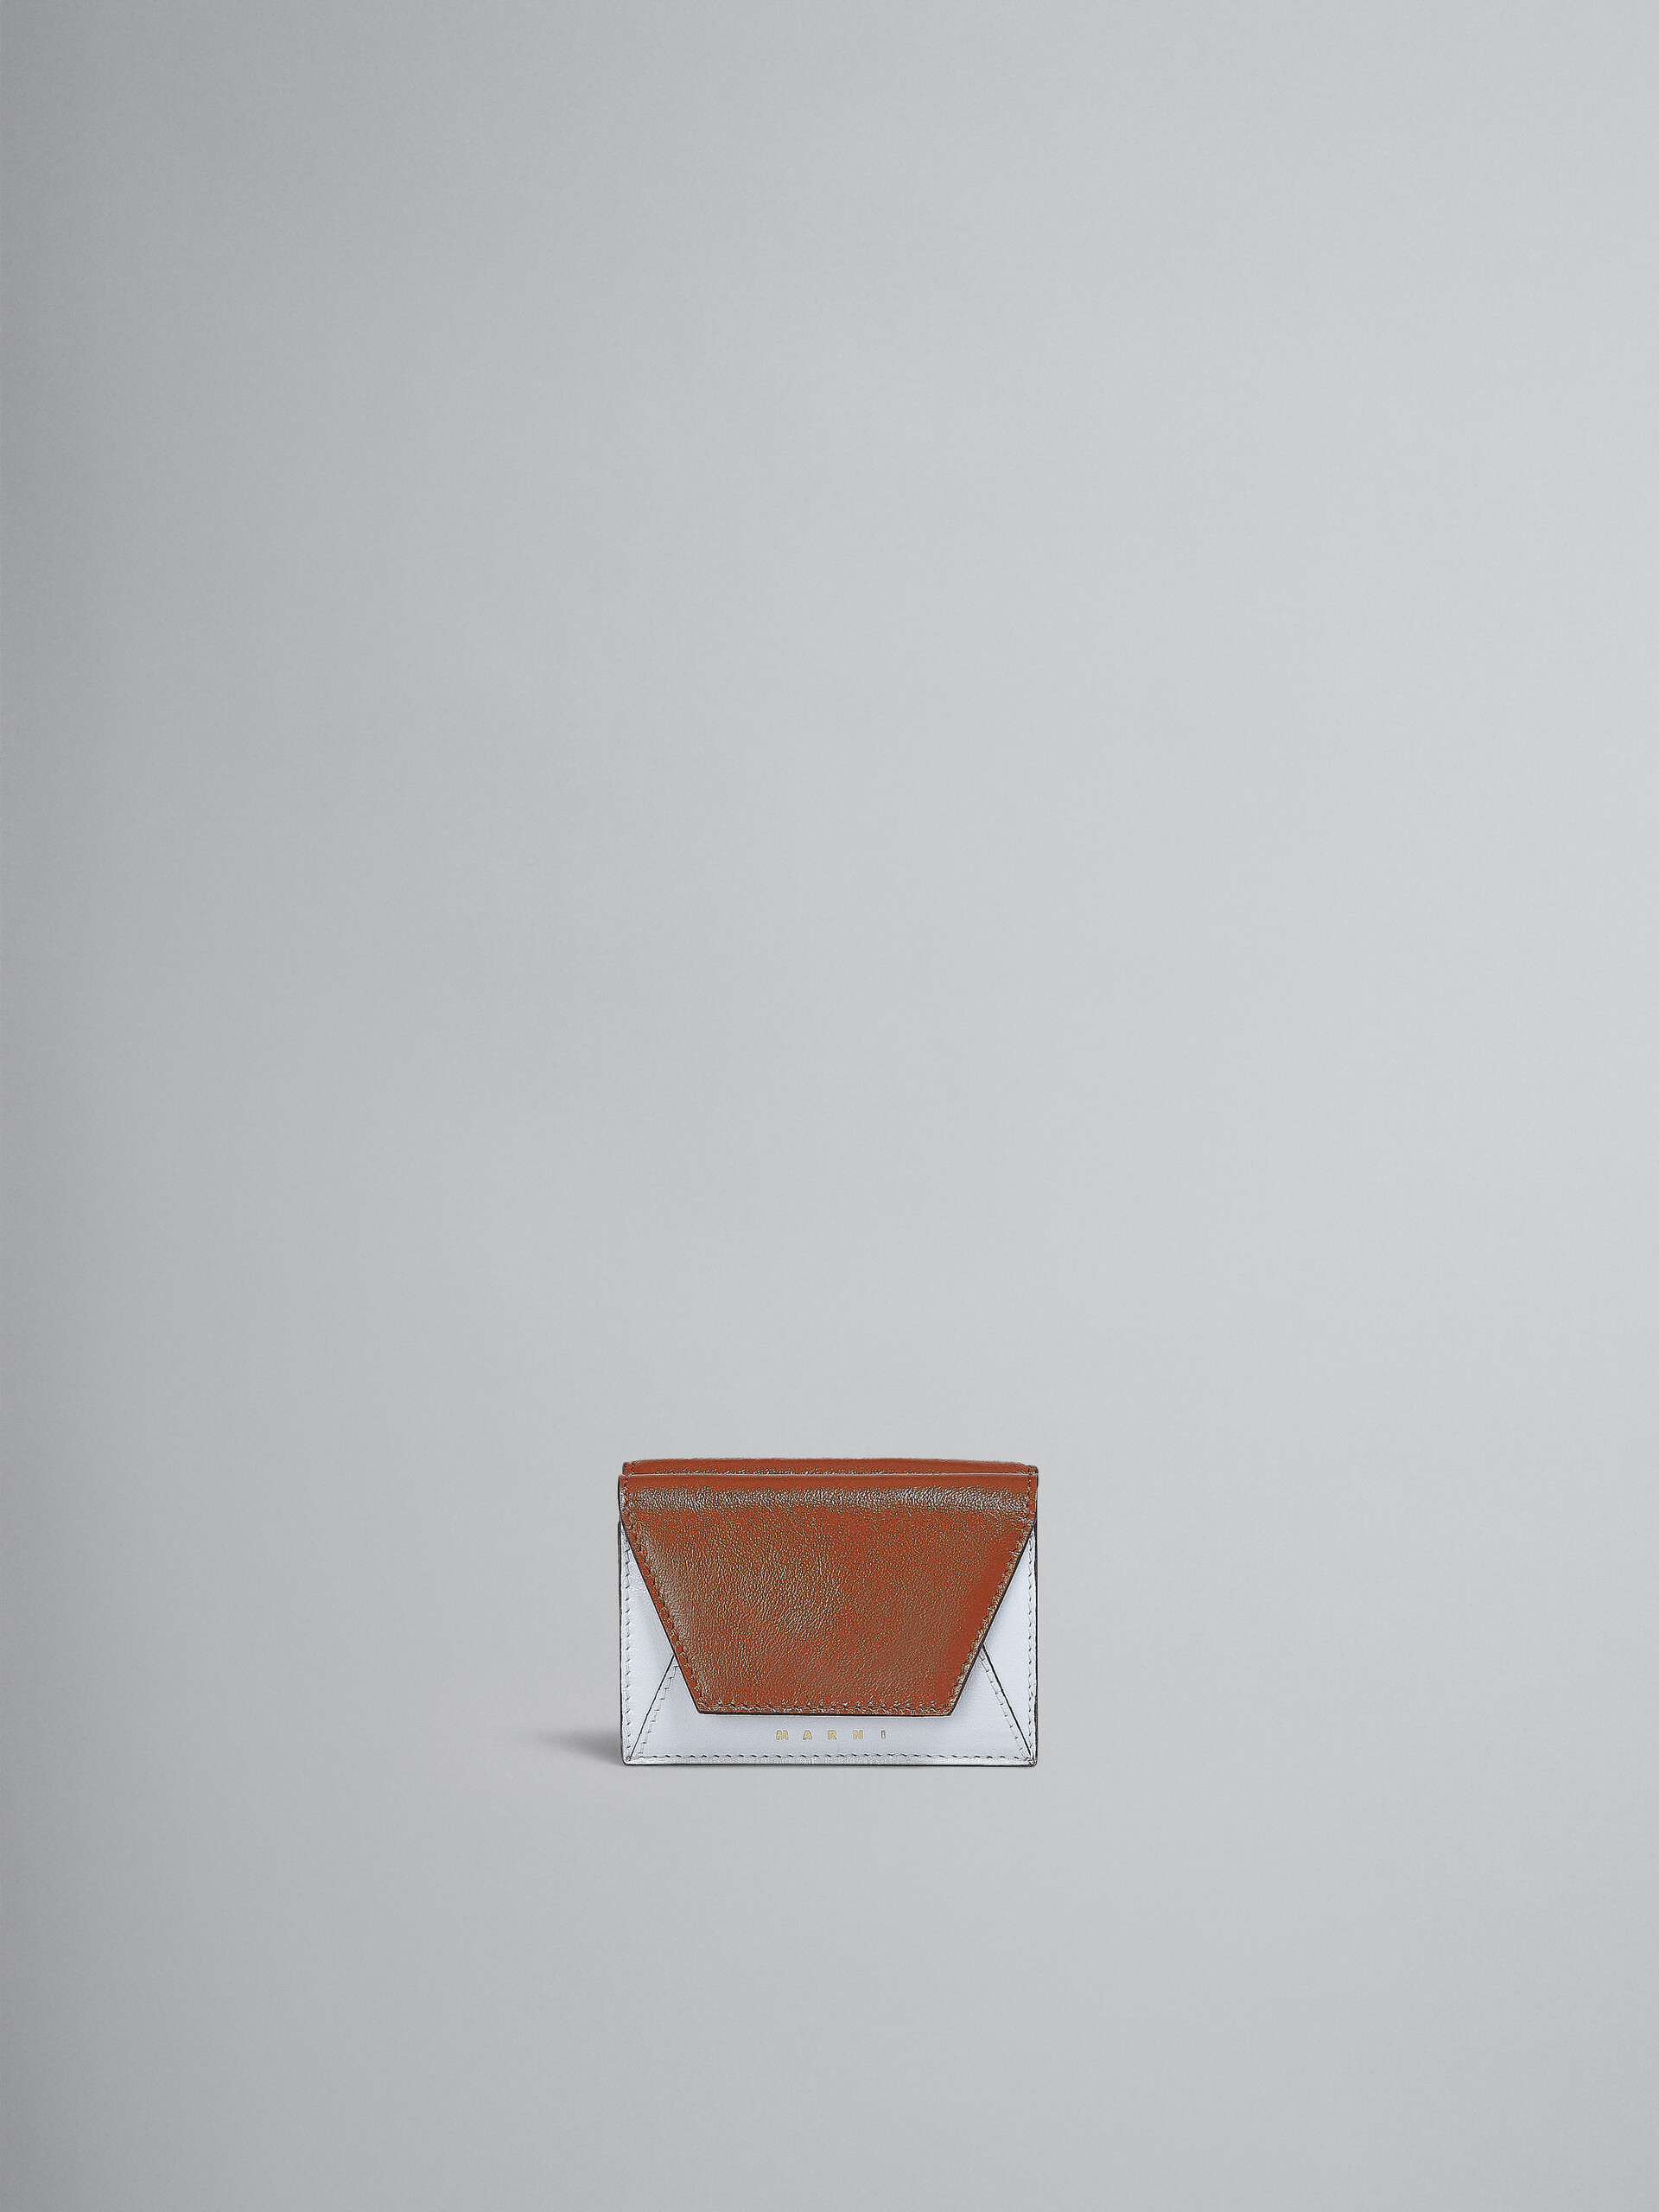 Dreifache Faltbrieftasche aus Leder in Grau und Schwarz - Brieftaschen - Image 1